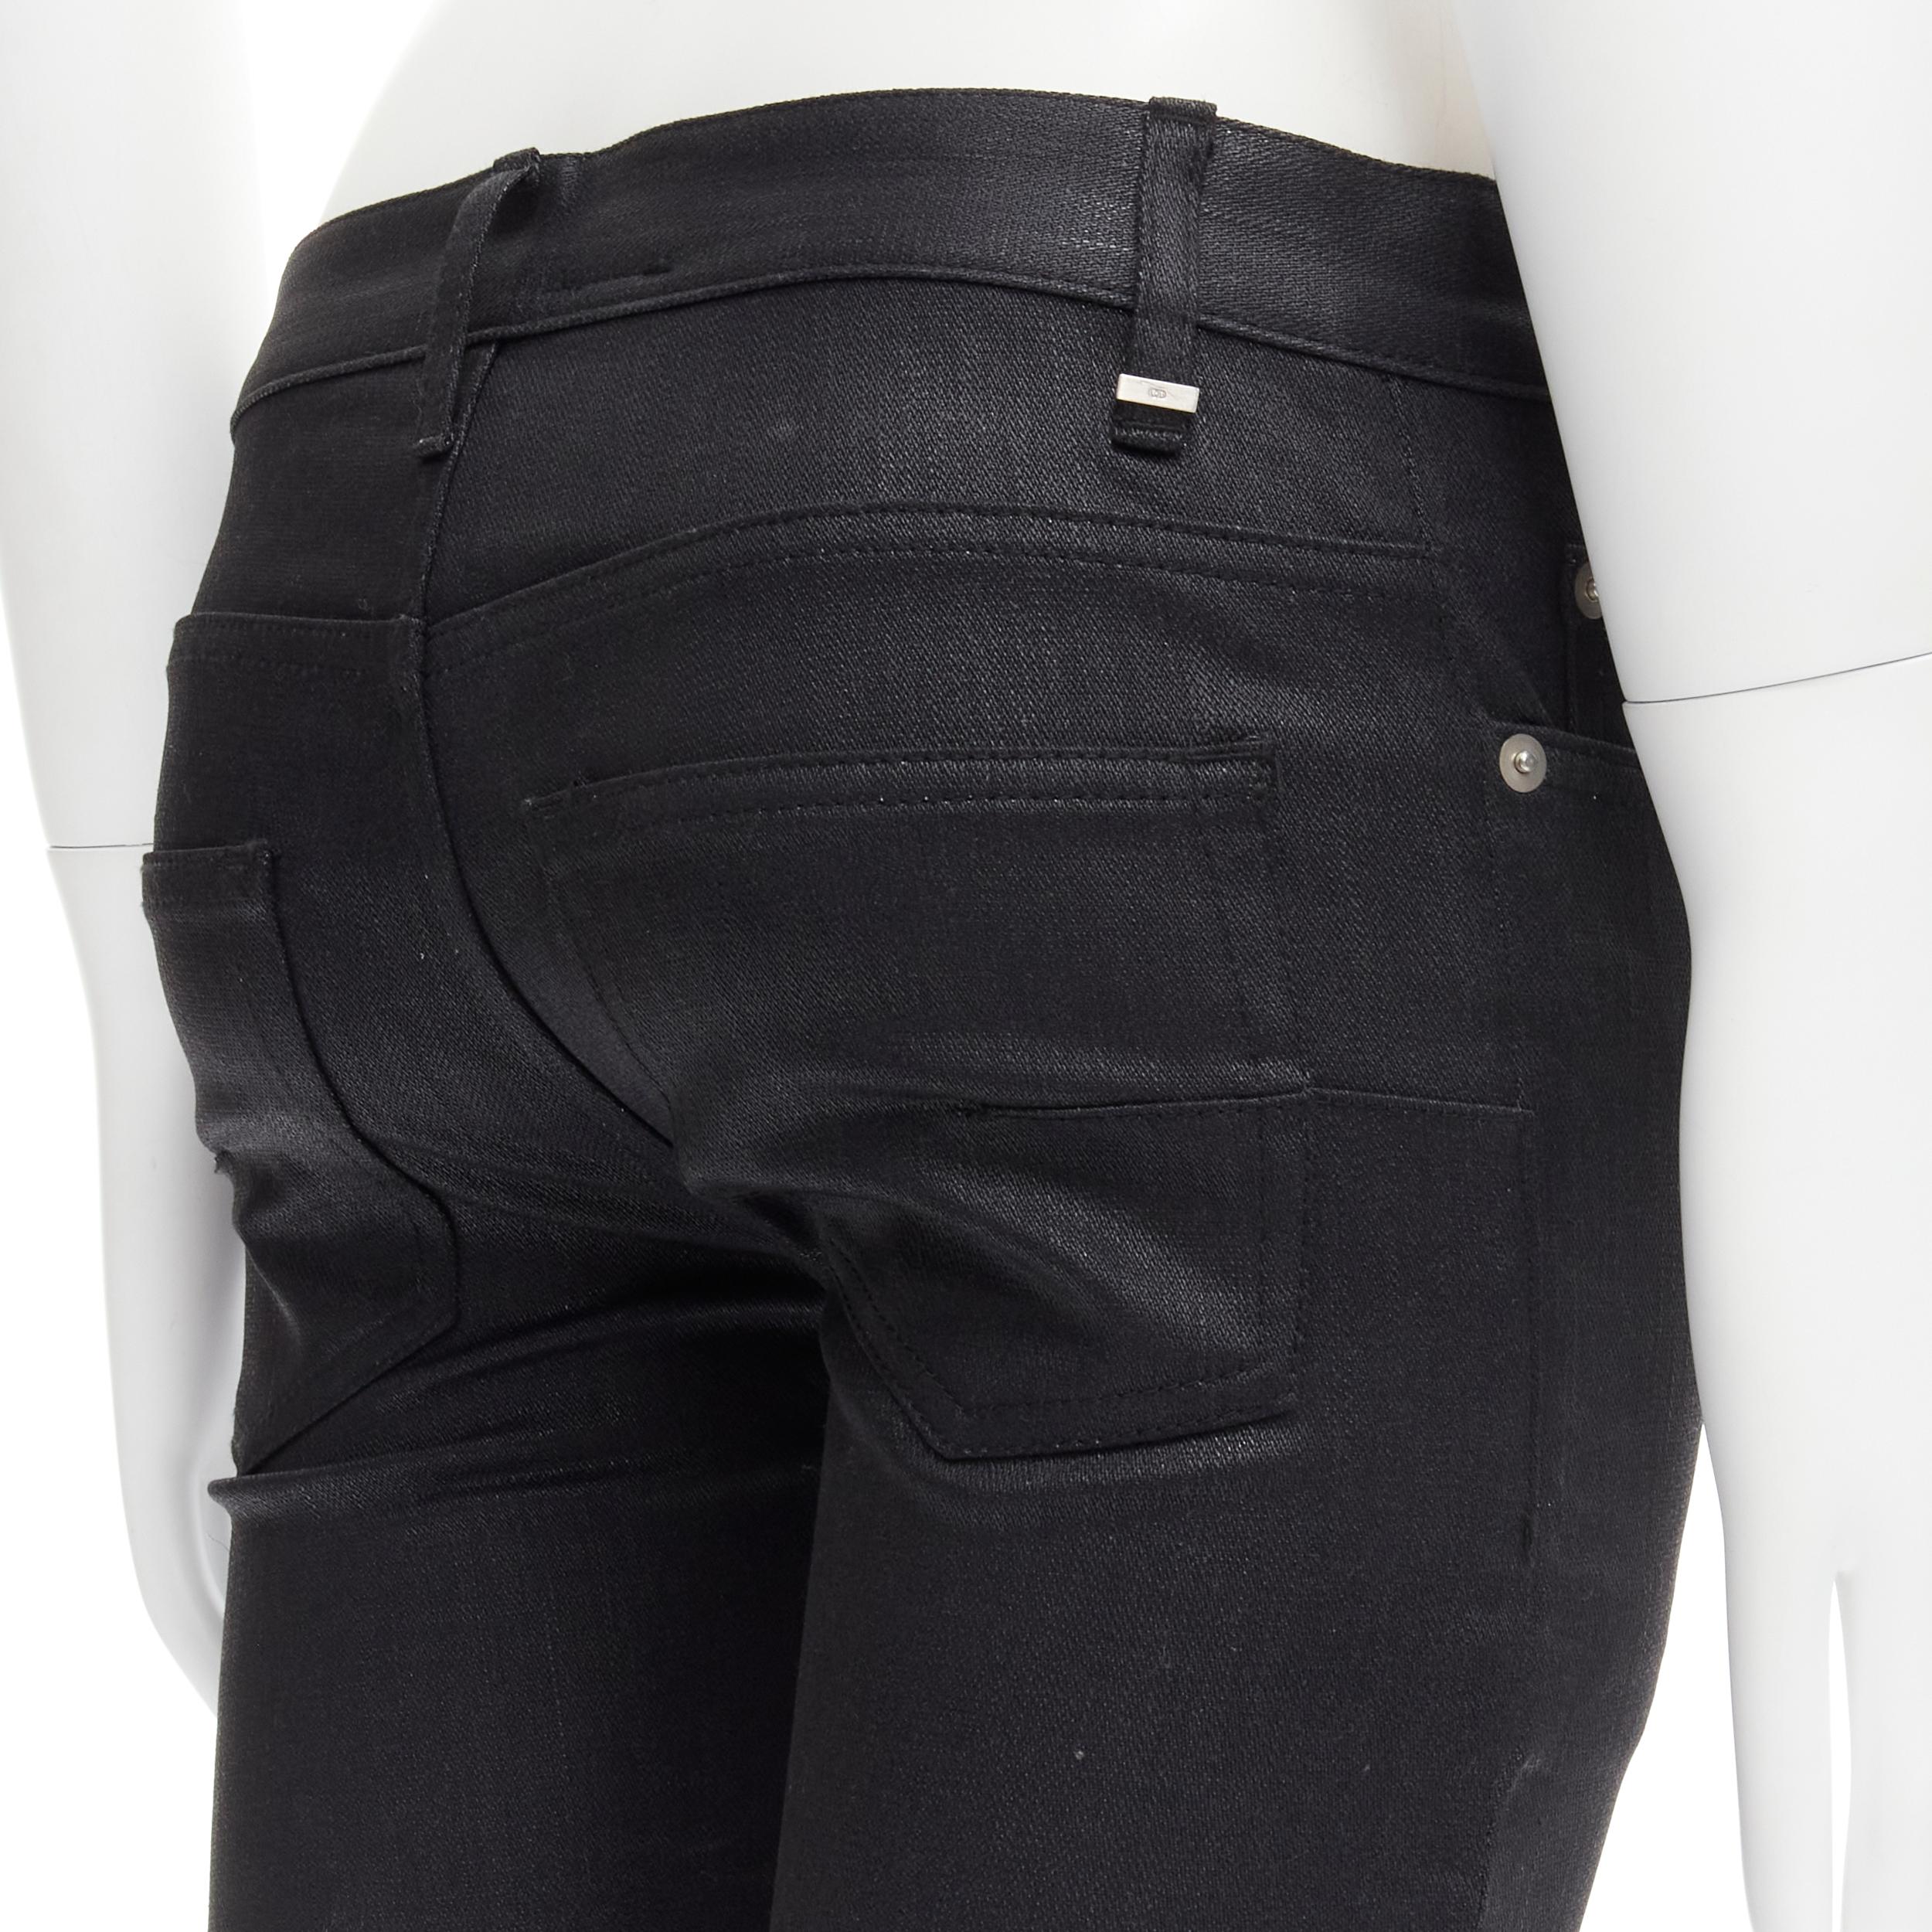 DIOR HOMME Hedi Slimane black coated 5-pocket slinny fit jeans 26